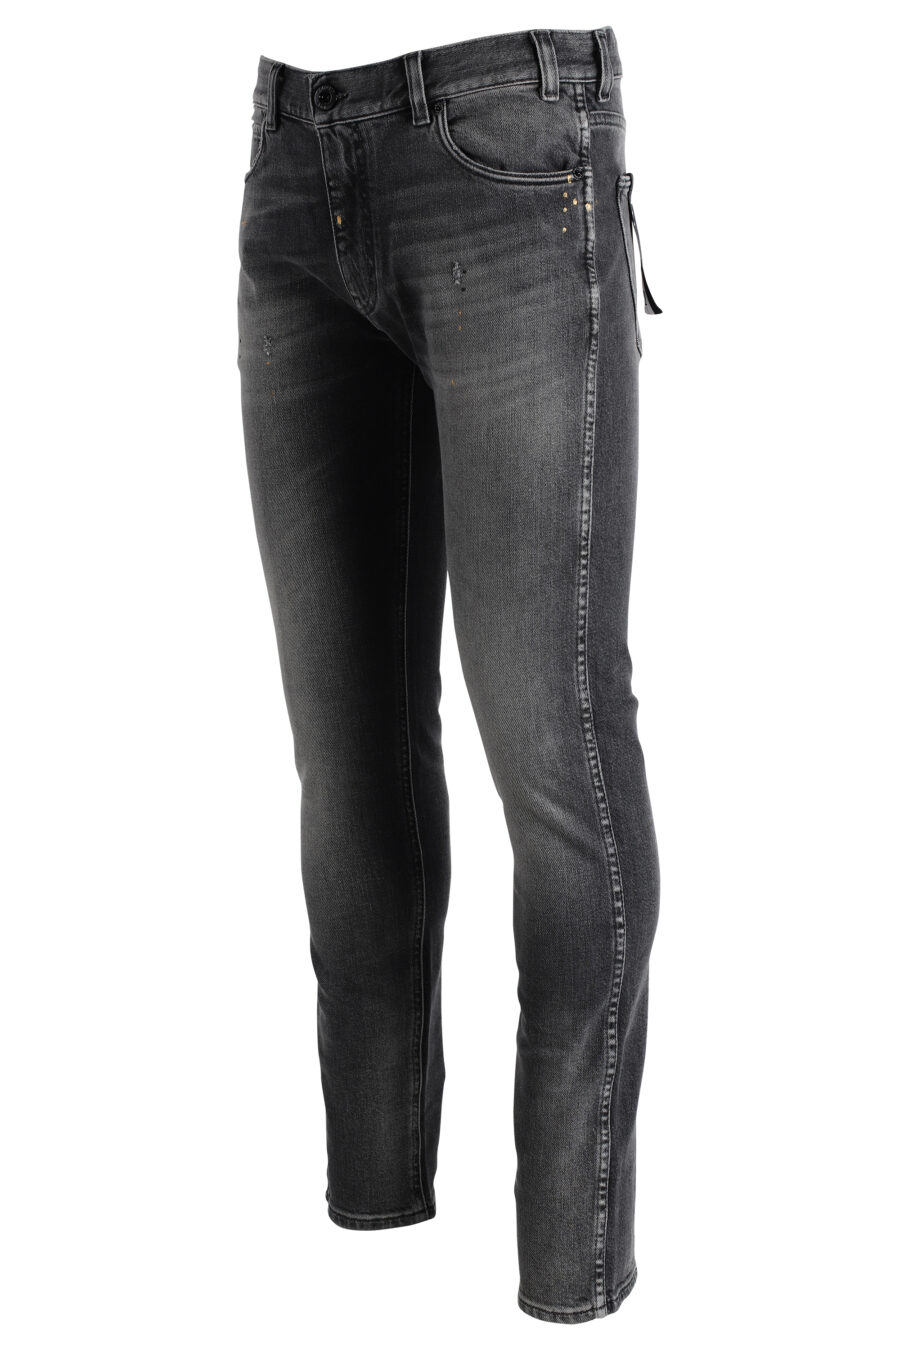 Ausgebleichte graue Jeans mit Adler-Logo - IMG 4826